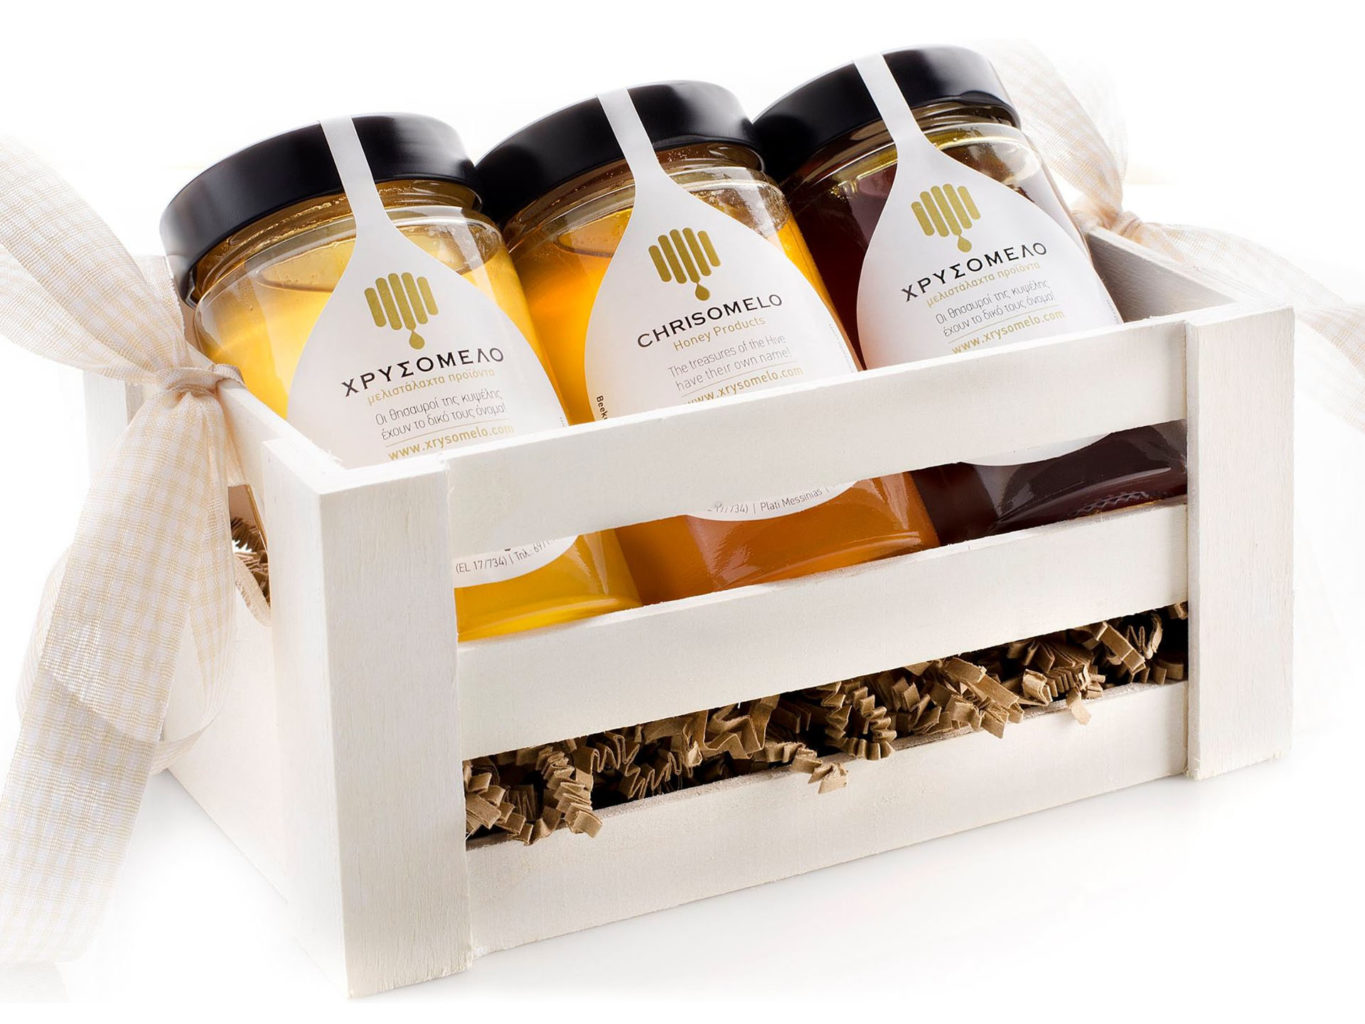 Chrisomelo honey packaging